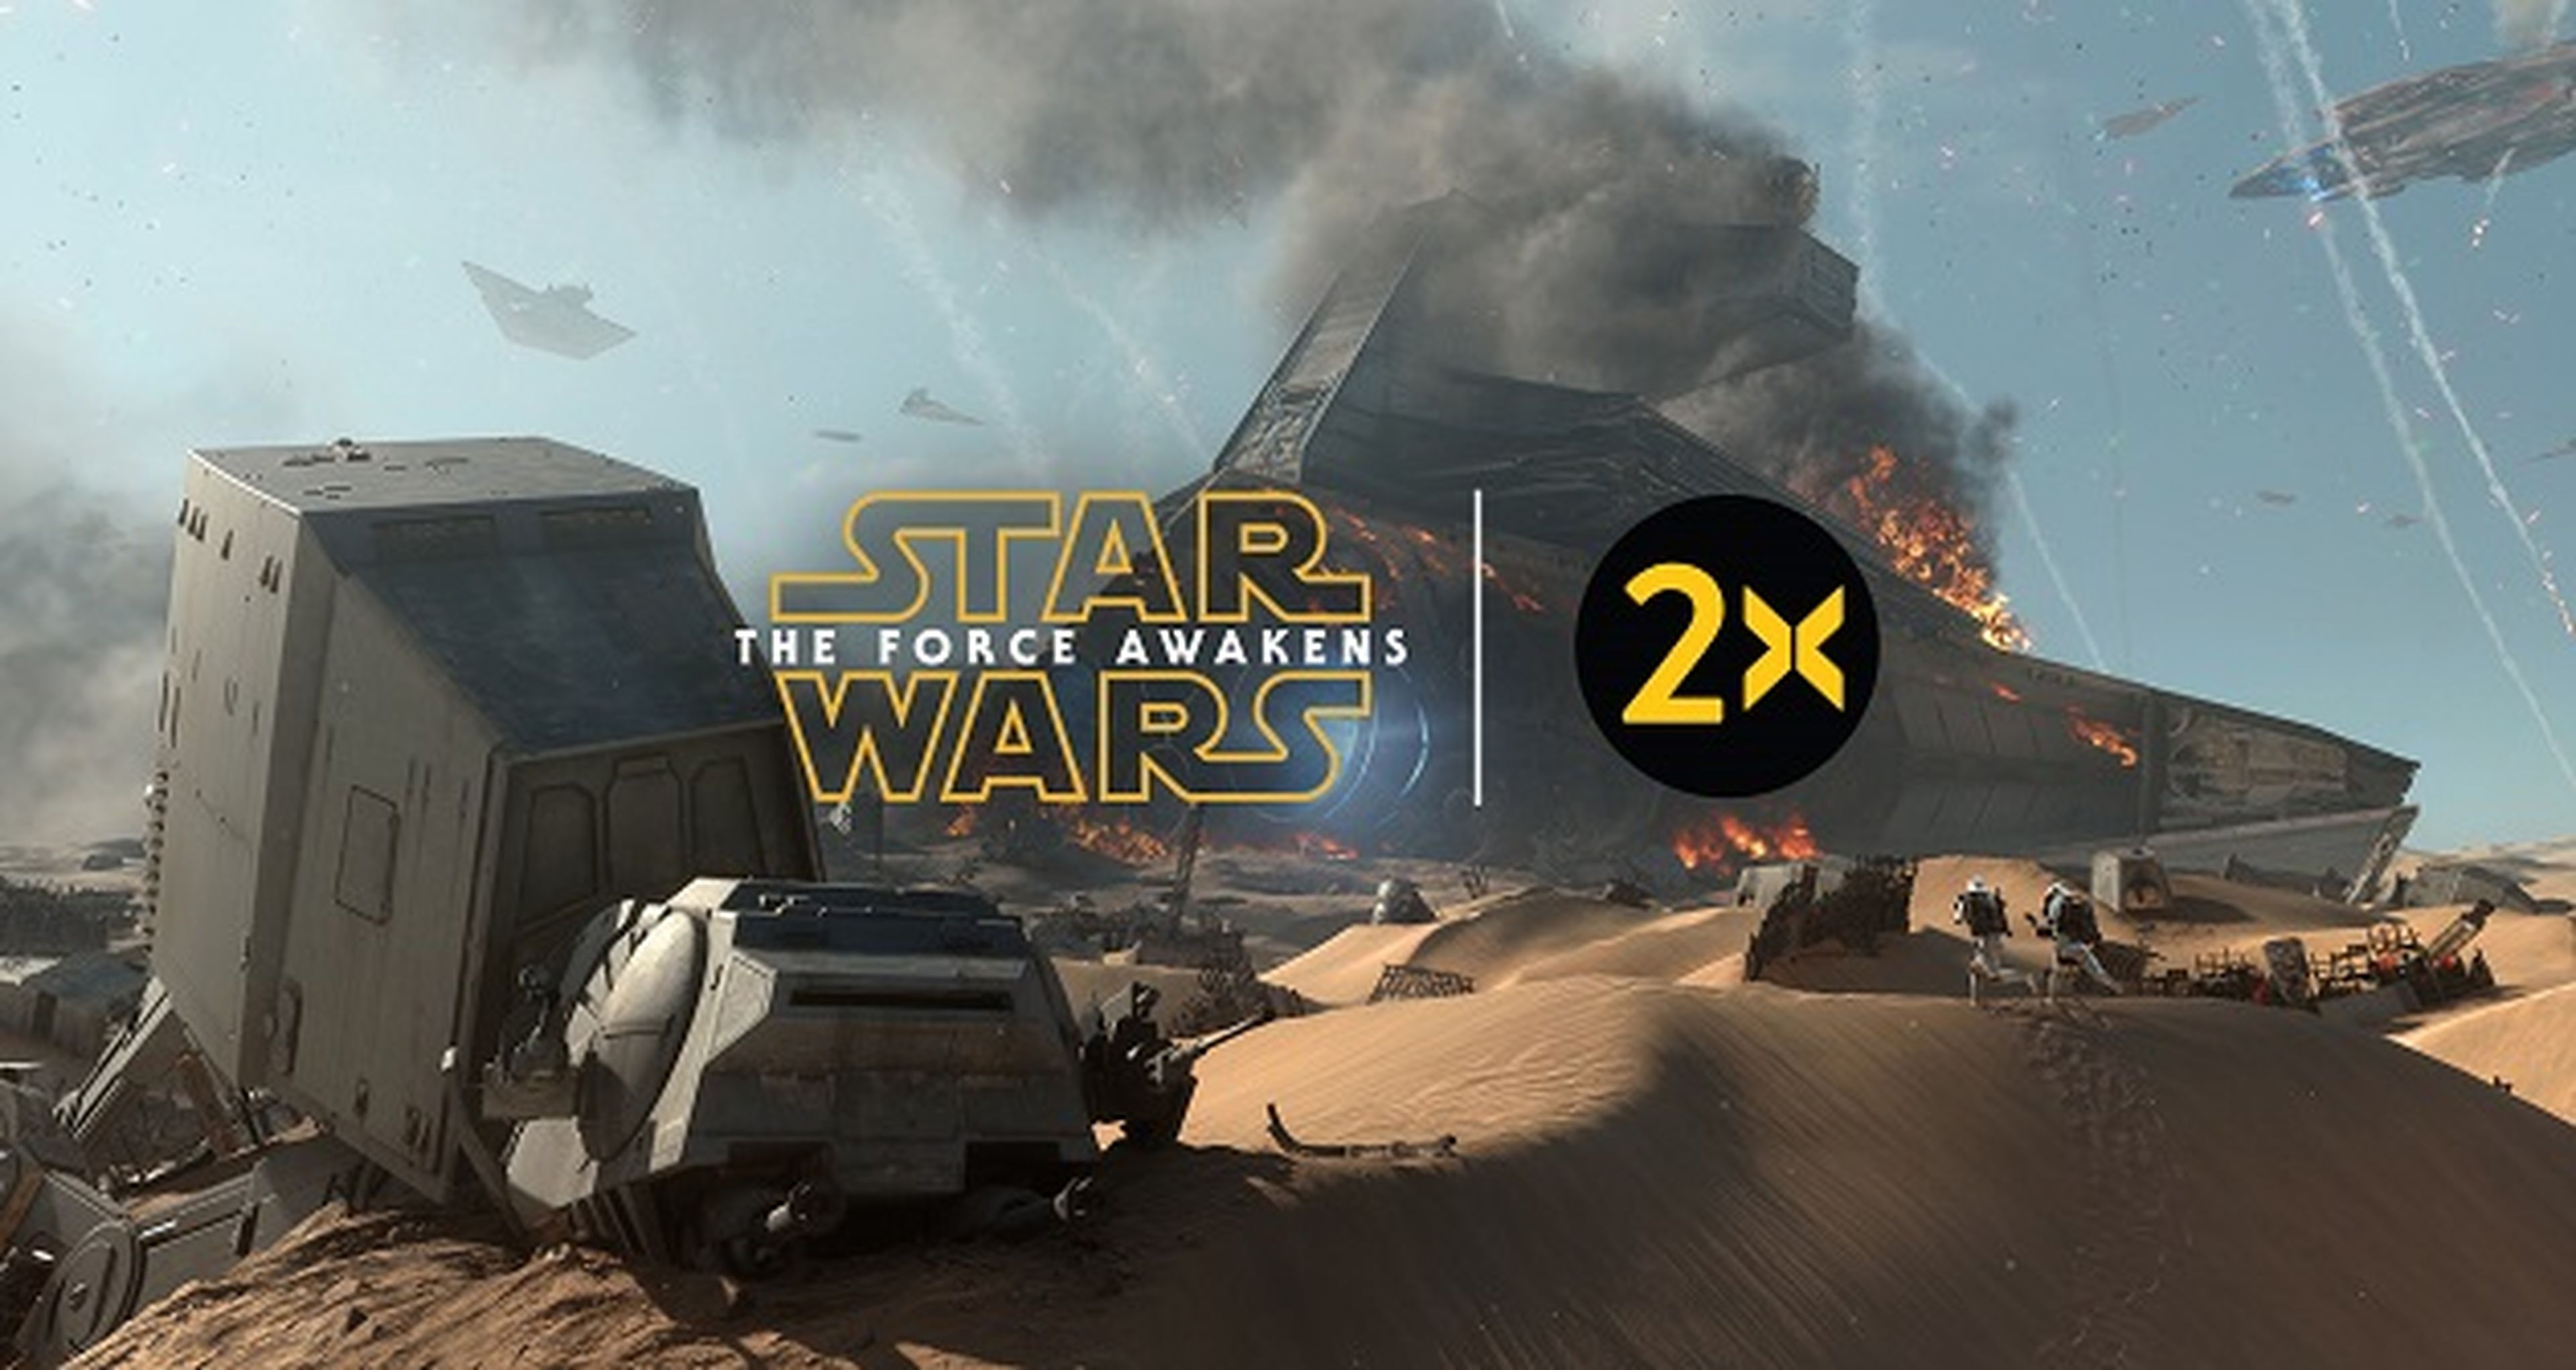 Star Wars Battlefront, doble experiencia por el estreno de El Despertar de la Fuerza